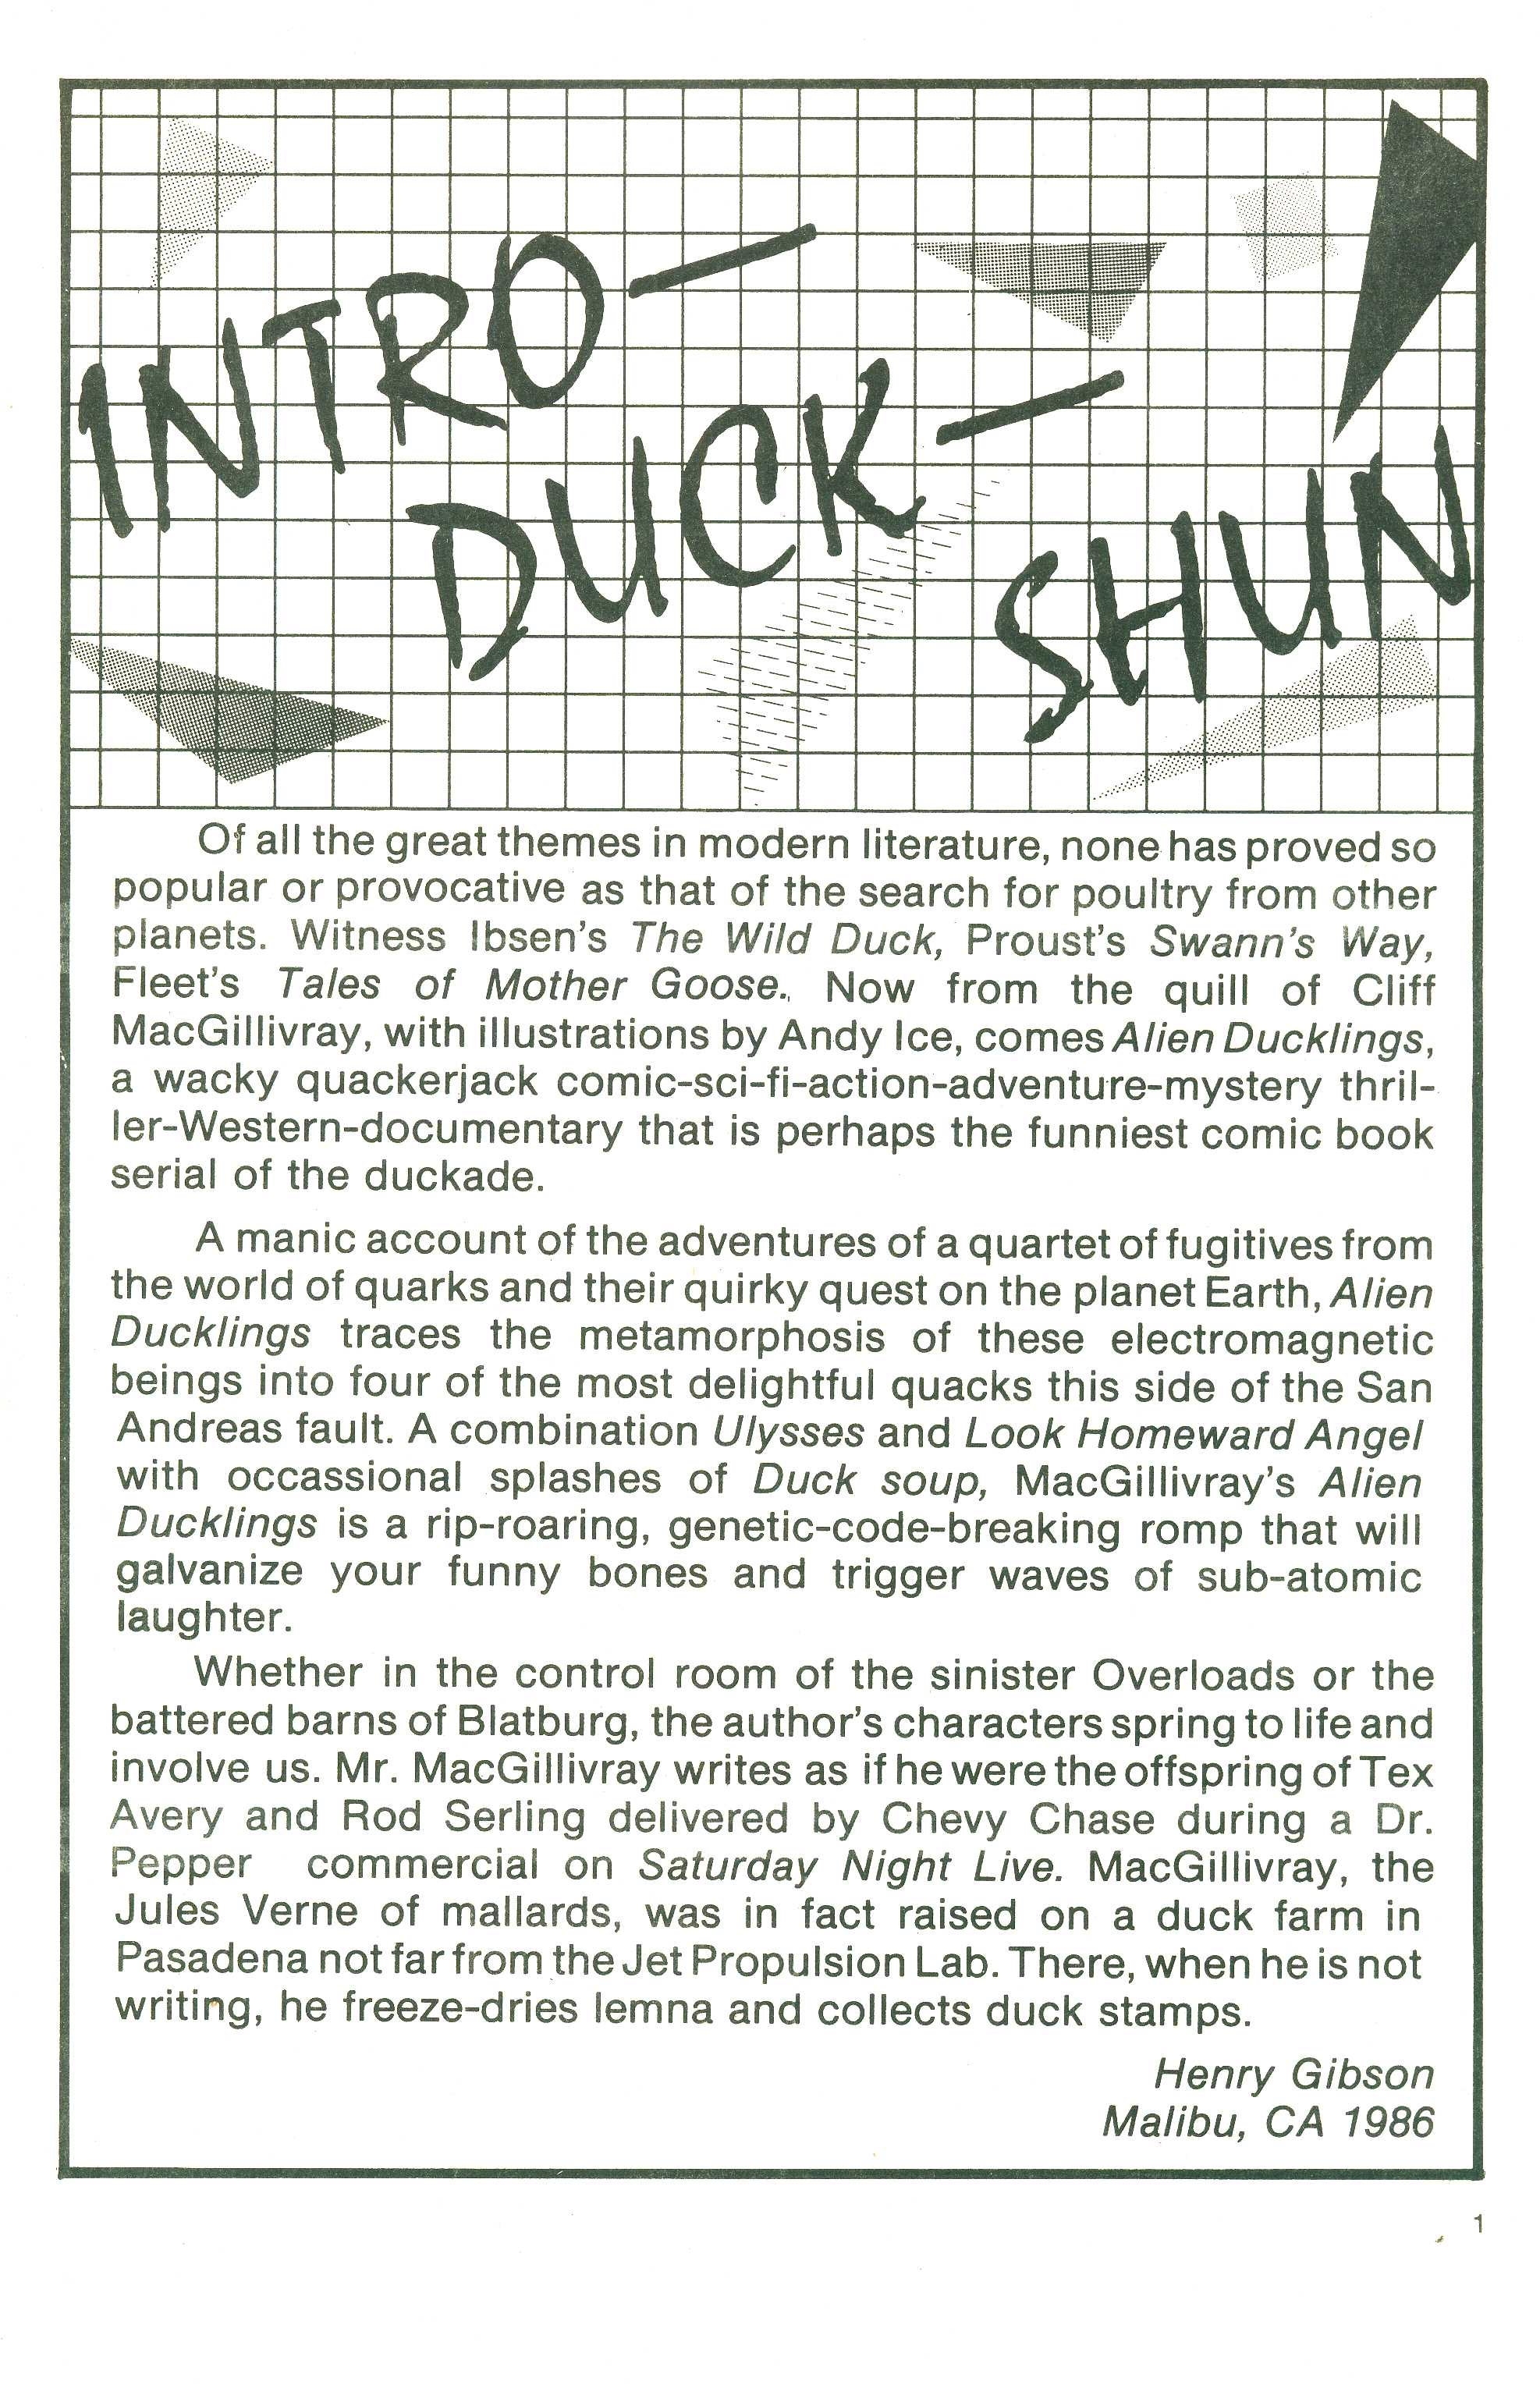 Read online Alien Ducklings comic -  Issue #1 - 2